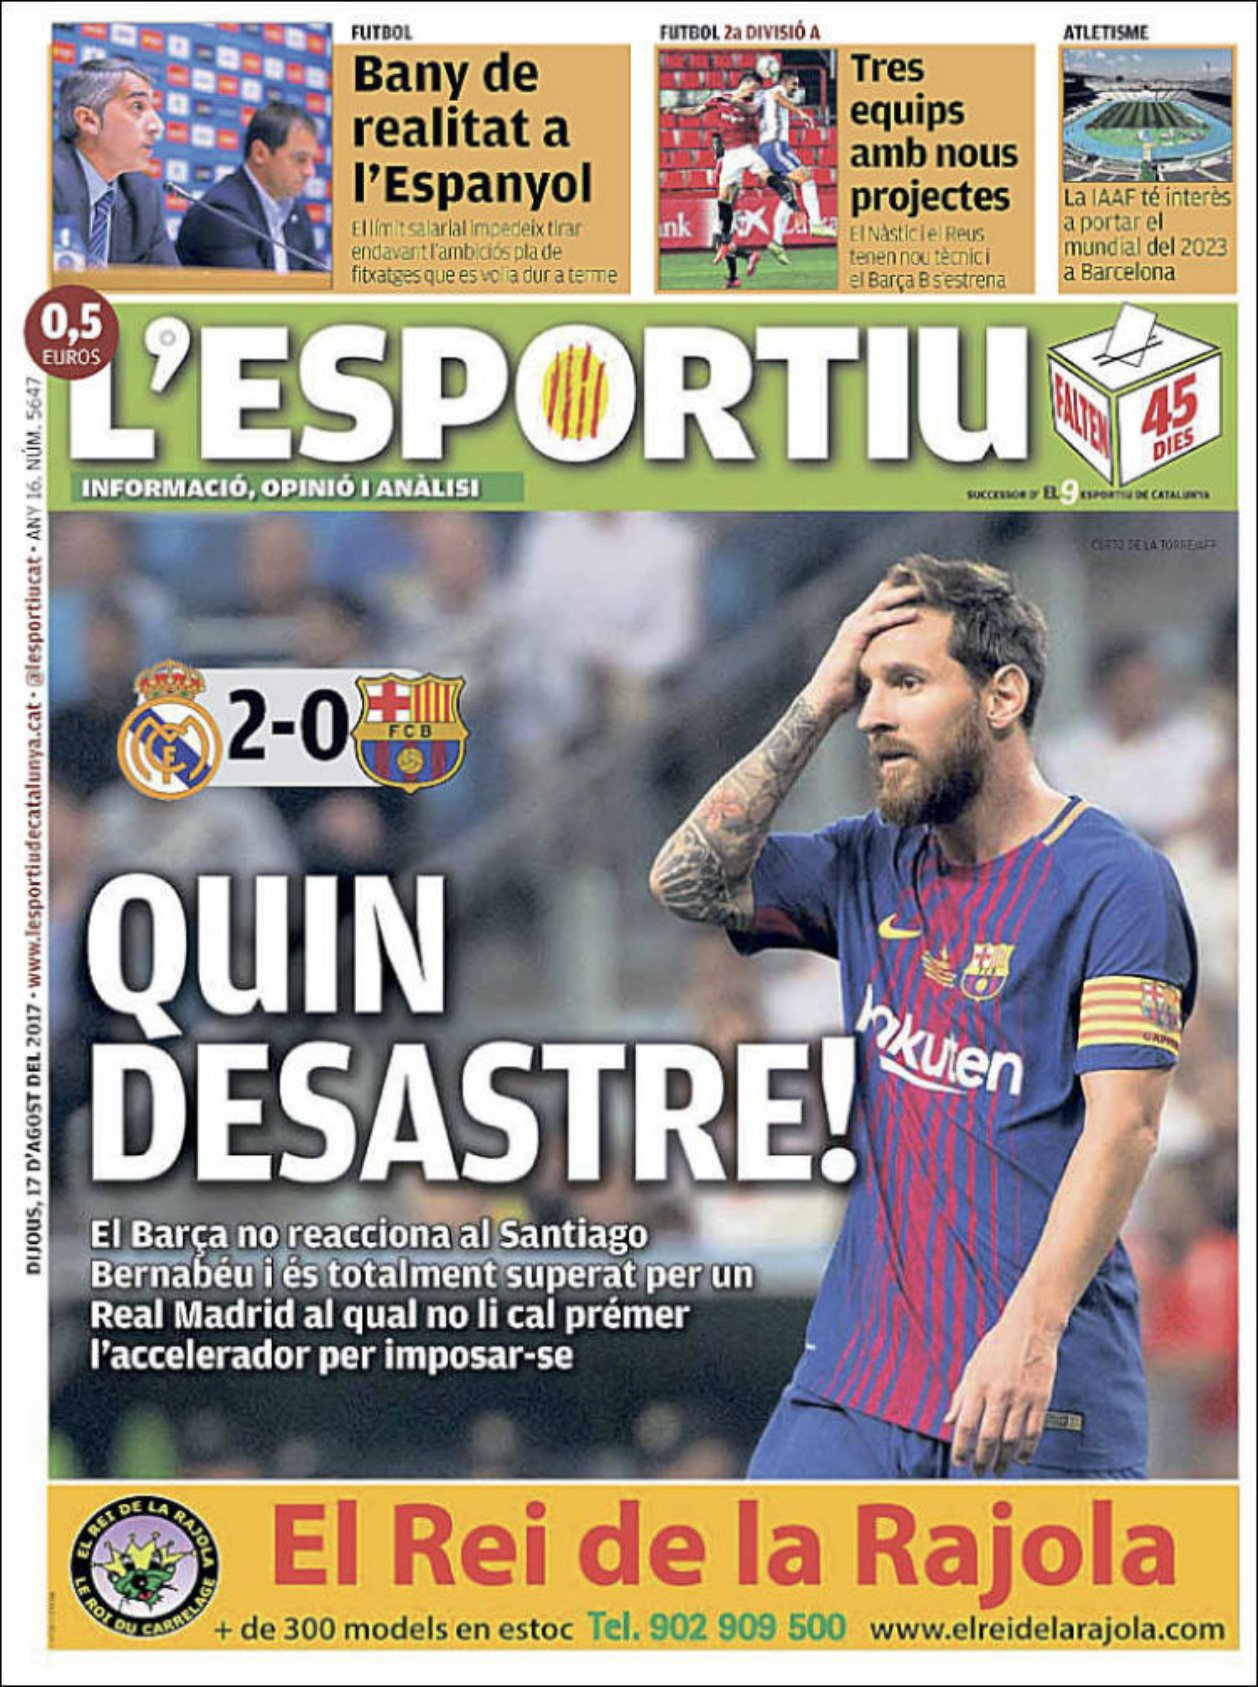 "Bany i ball": Així ha vist la premsa la derrota del Barça